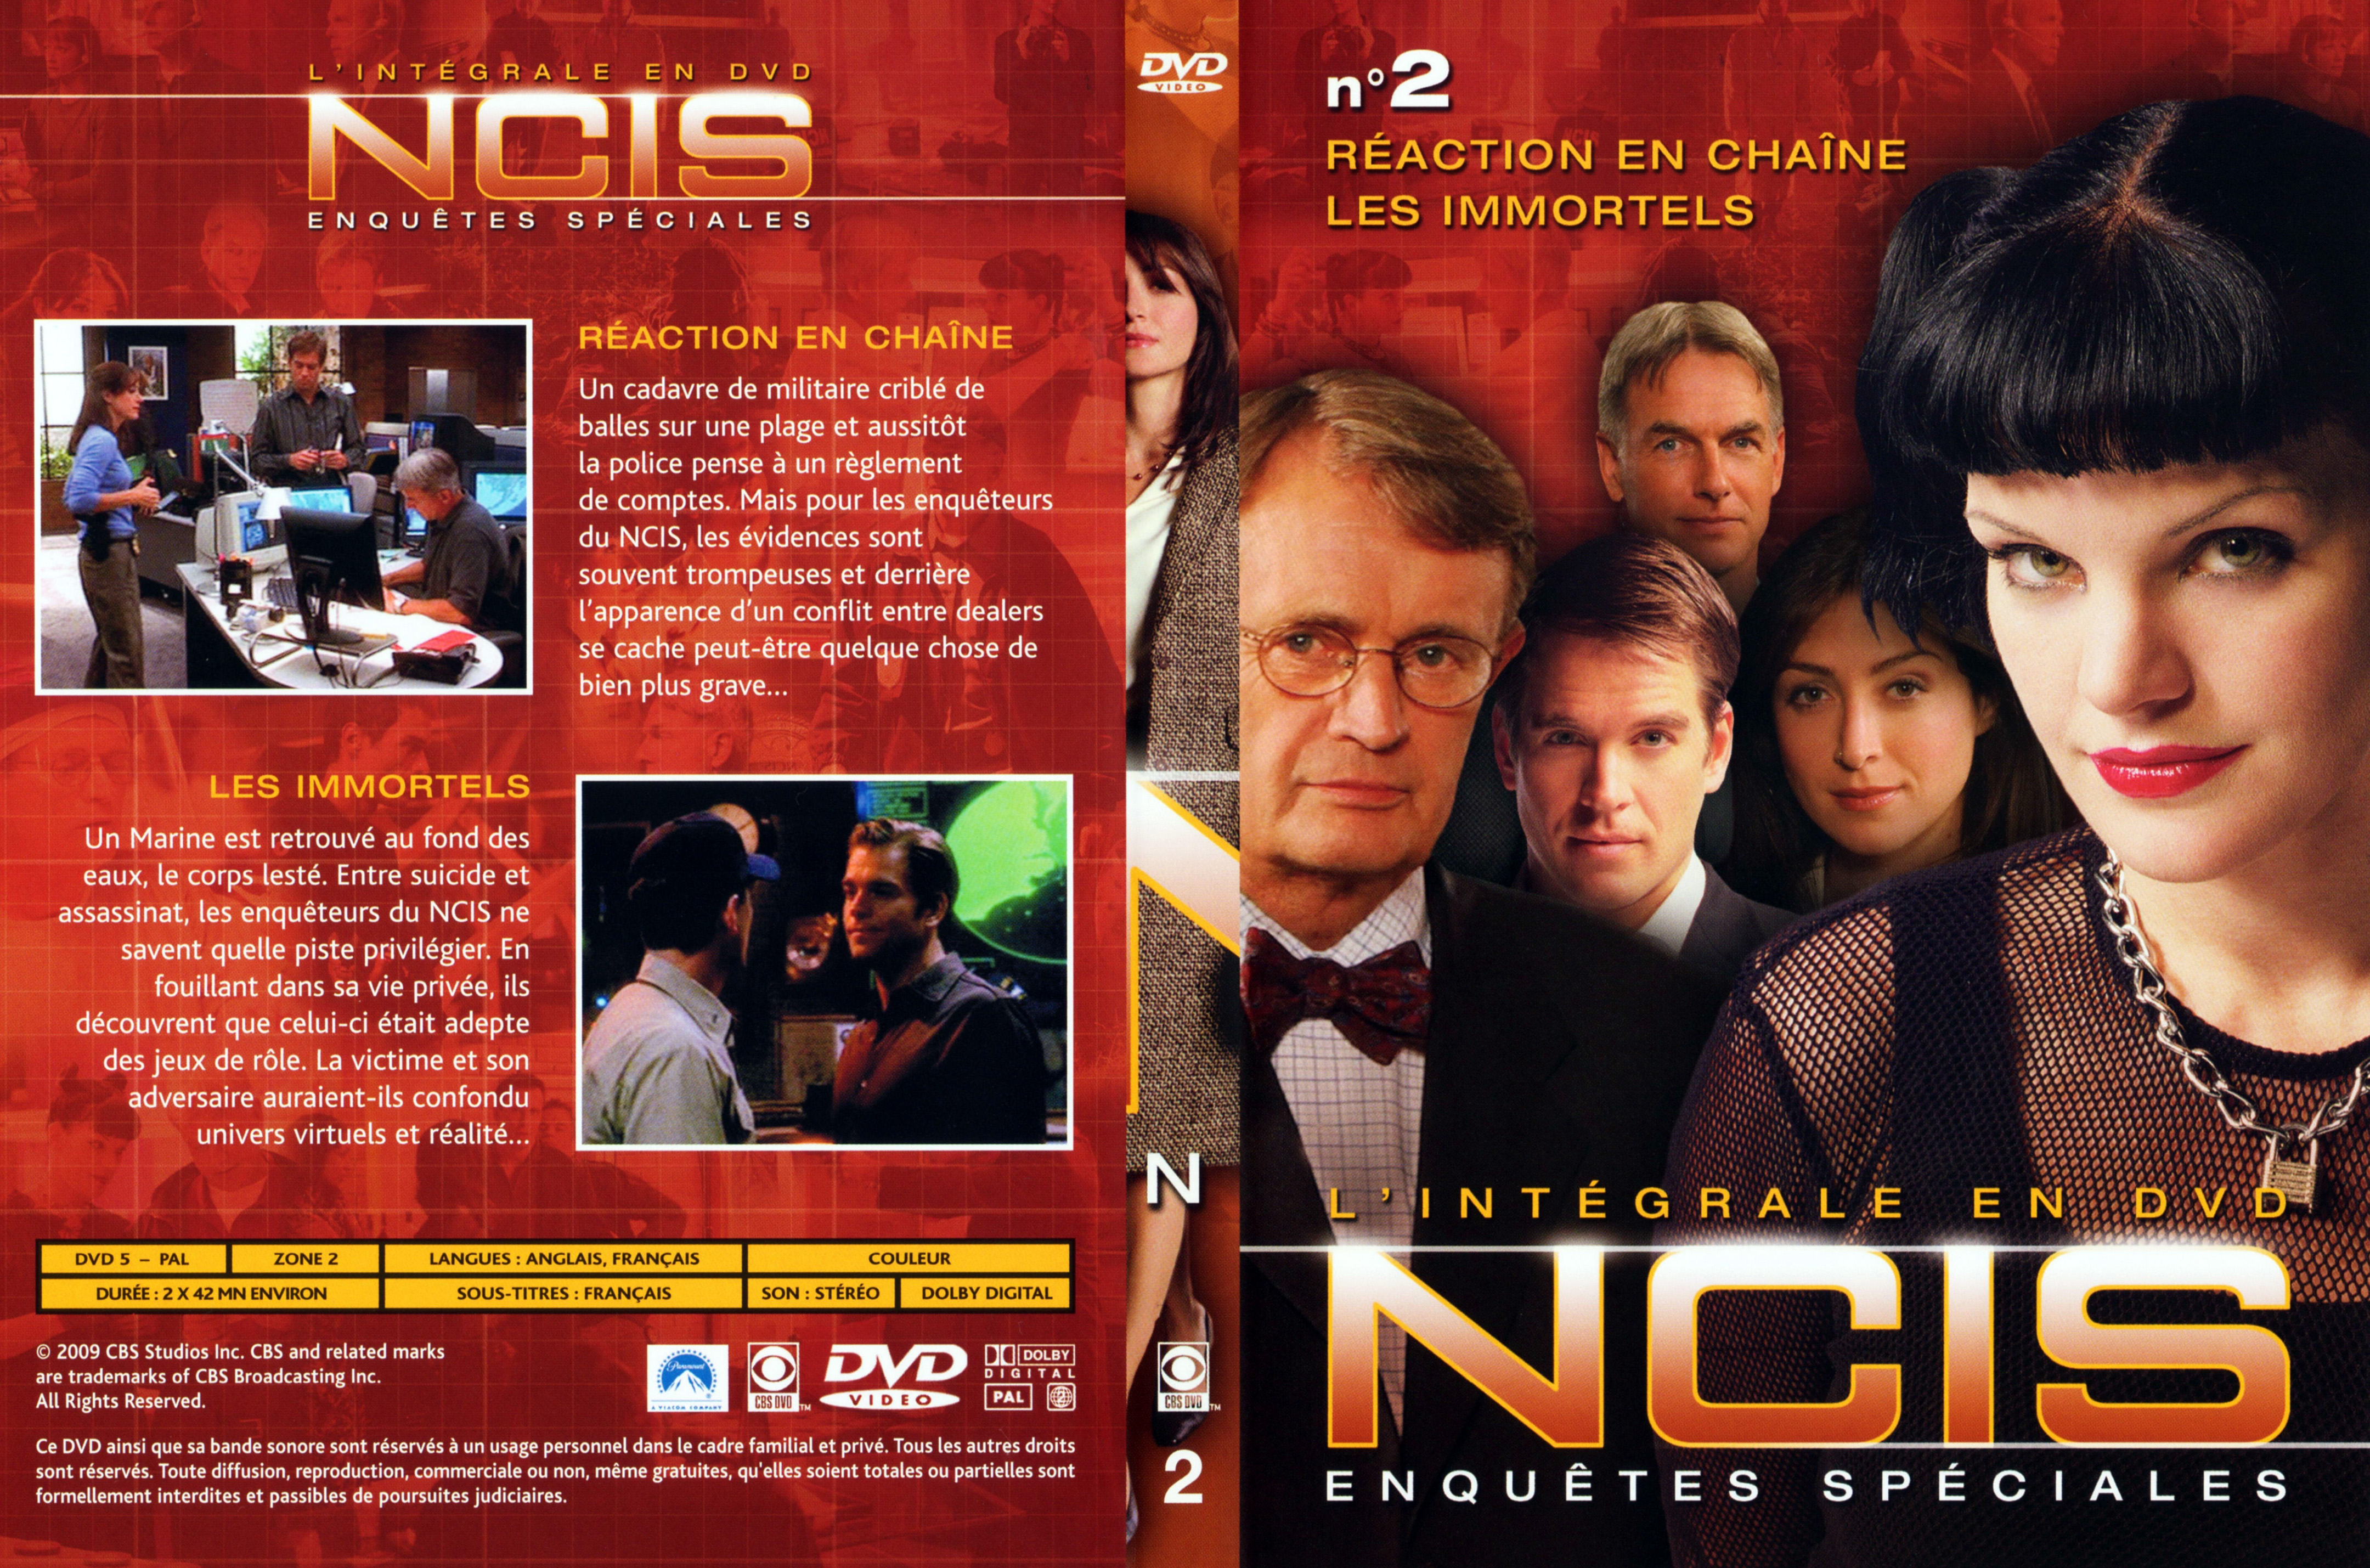 Jaquette DVD NCIS Integrale DVD 2